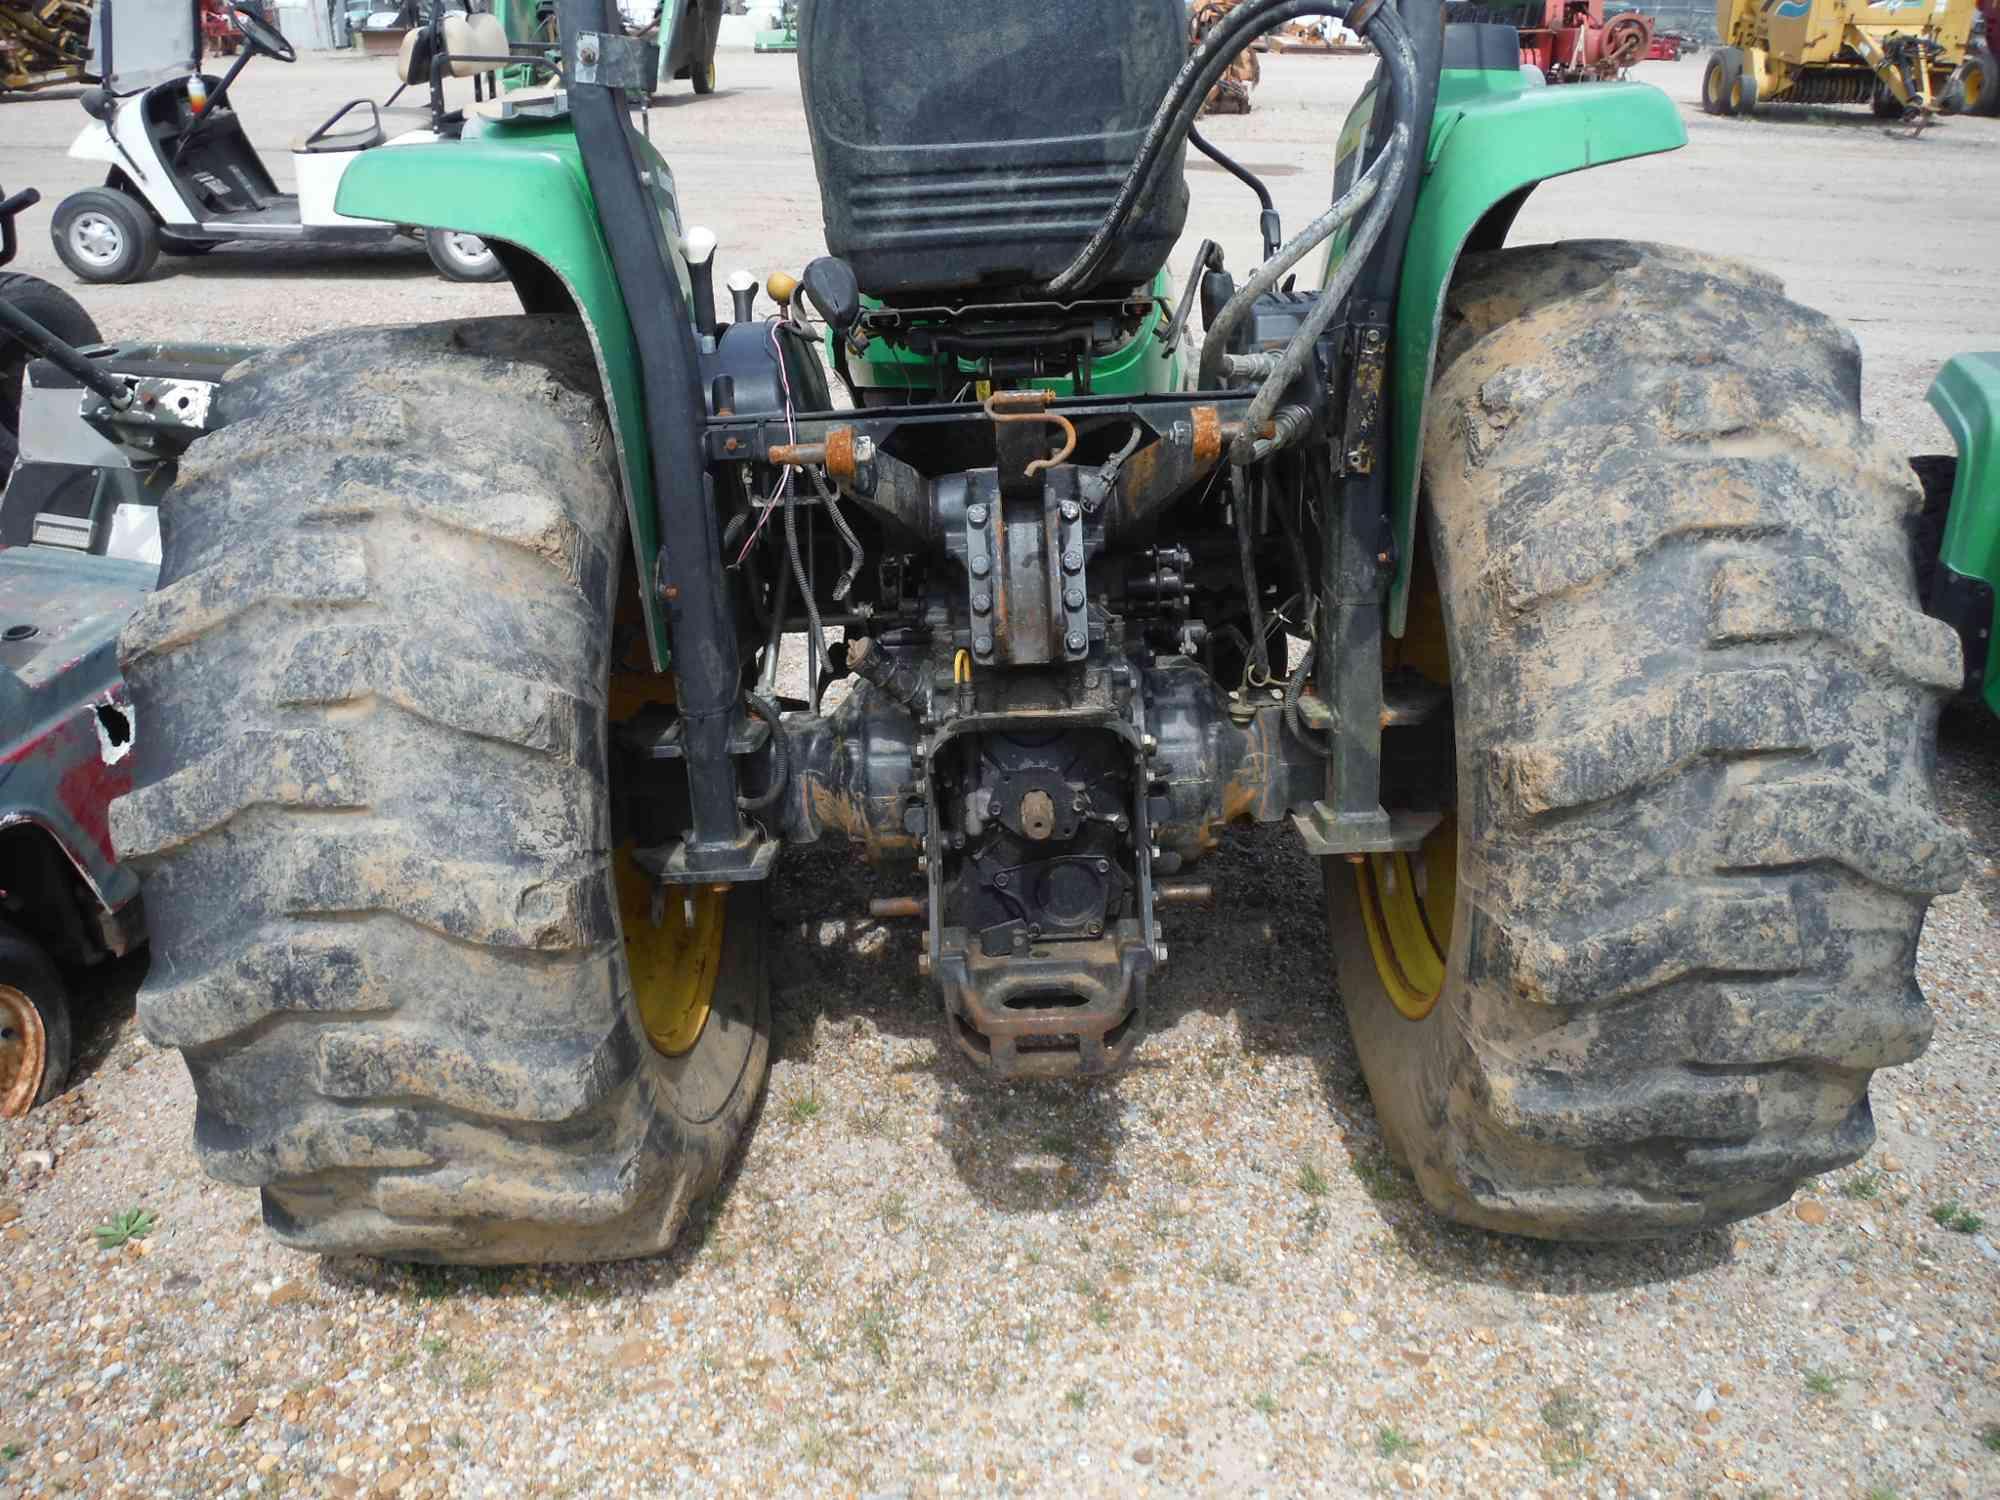 John Deere 4520 Tractor, s/n LV4520P255352 (Salvage): Power Reverser, Broke